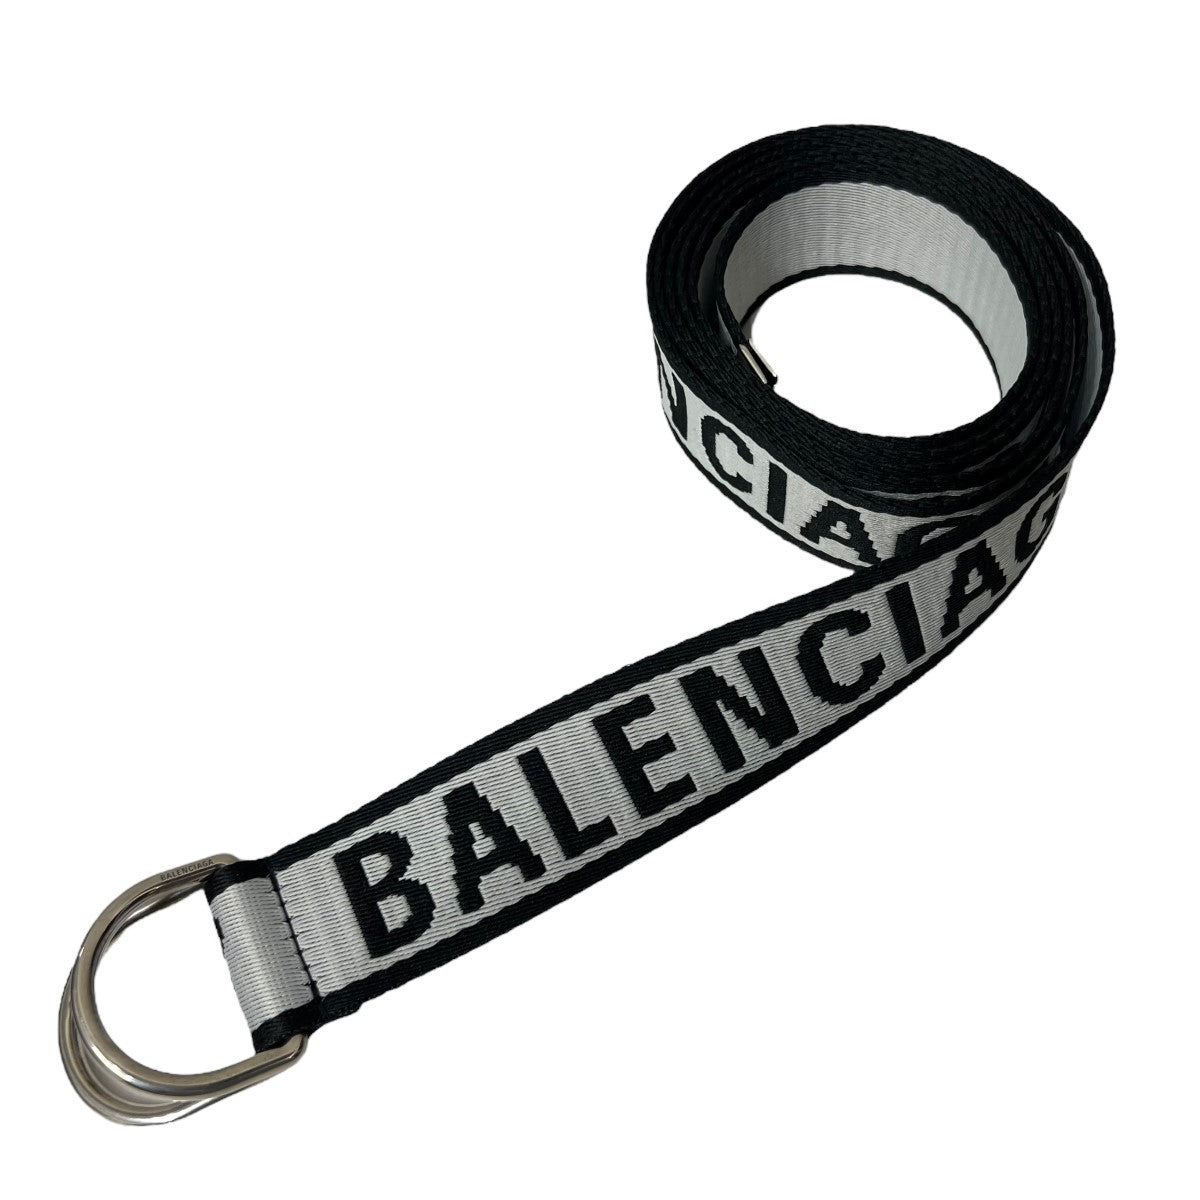 BALENCIAGA(バレンシアガ) D RING ベルト 703137 ホワイト×ブラック ...